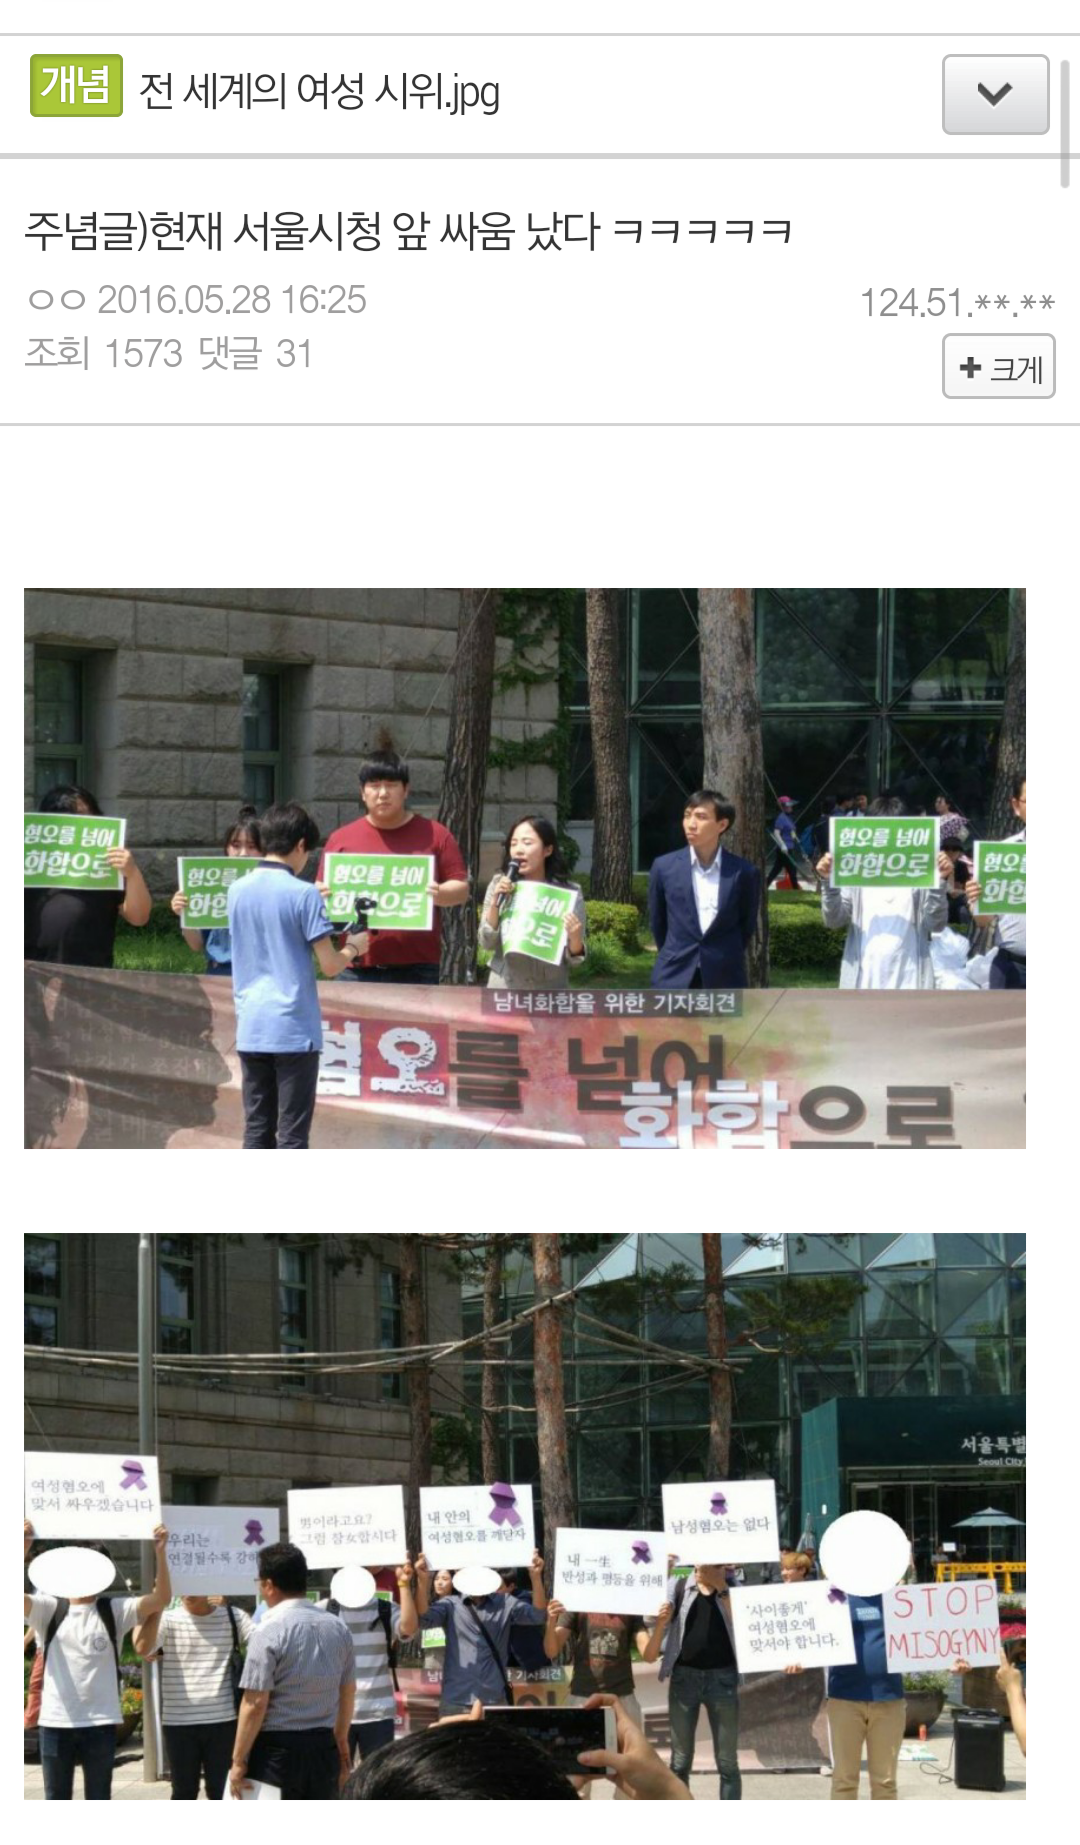 Screenshot_2016-05-28-16-59-52.png : 서울시청 앞 싸움